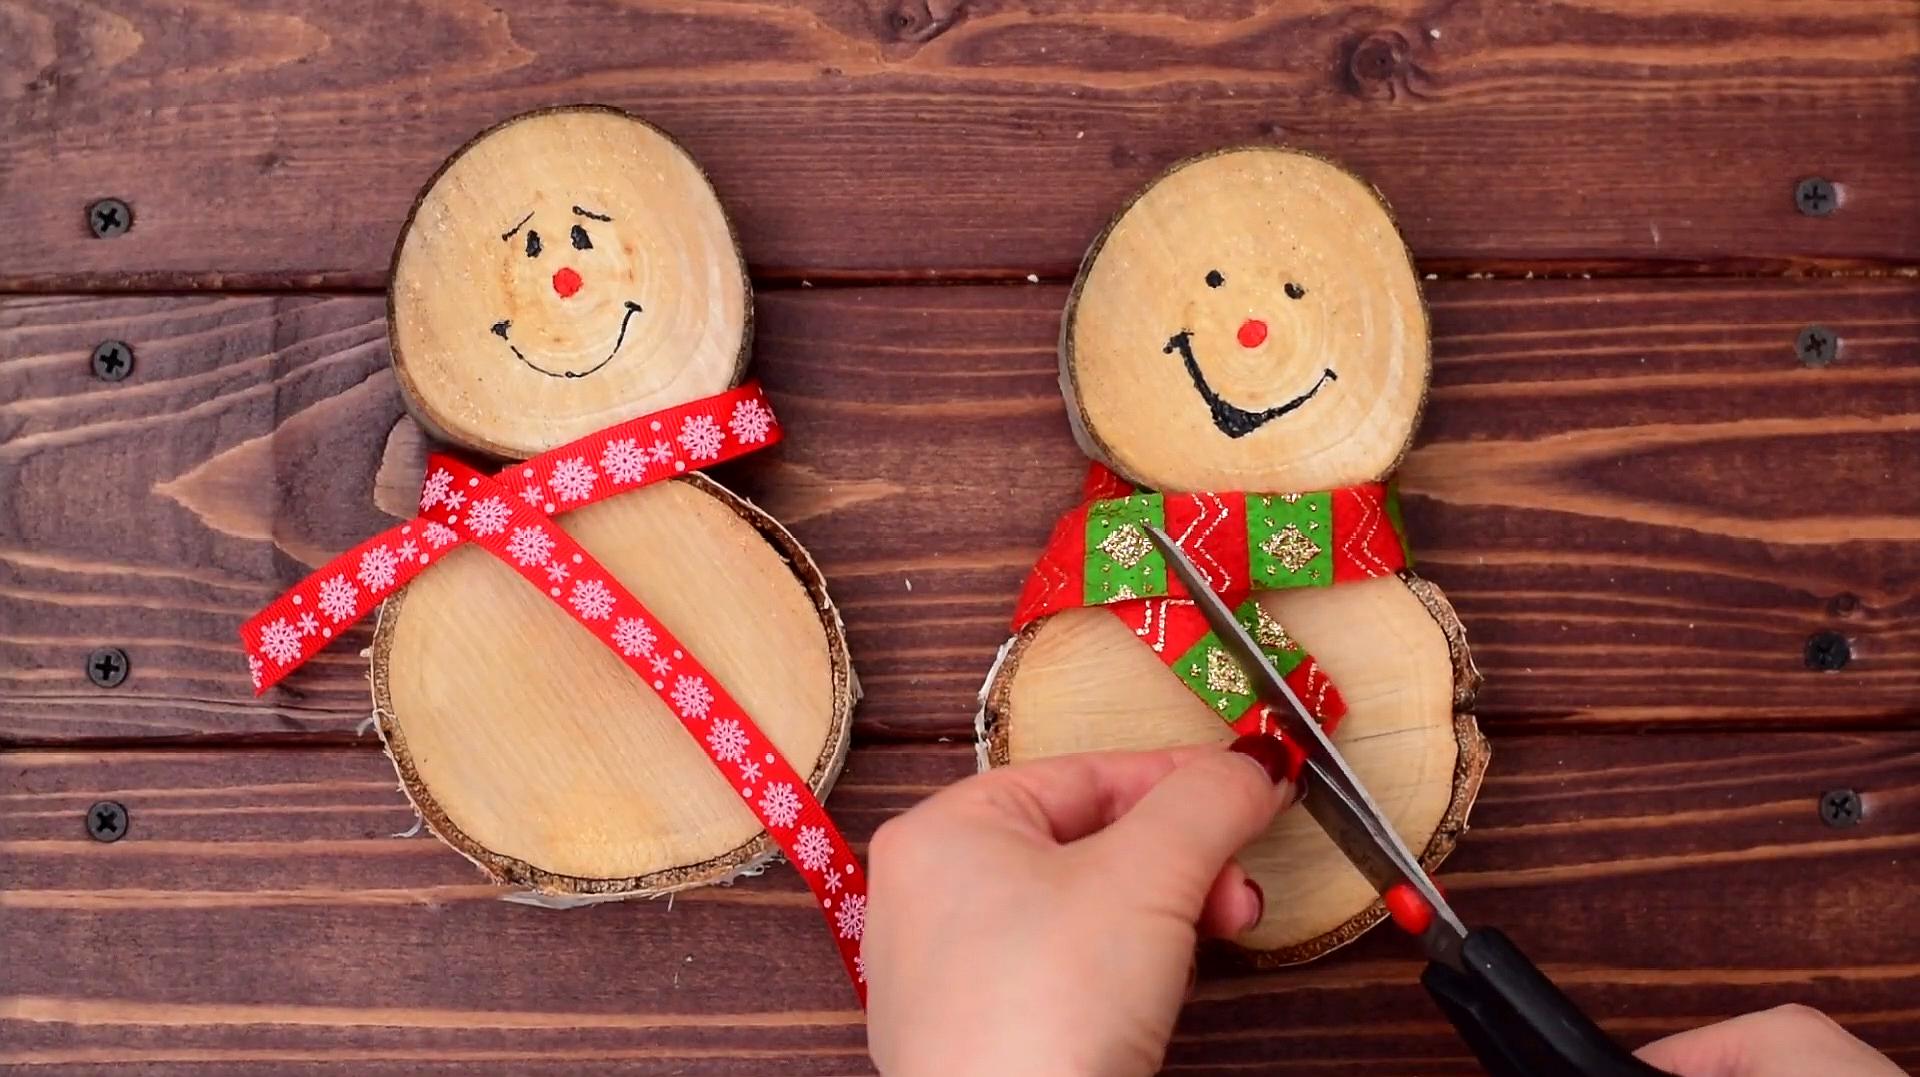 创意手工:用木头制作雪人装饰品!